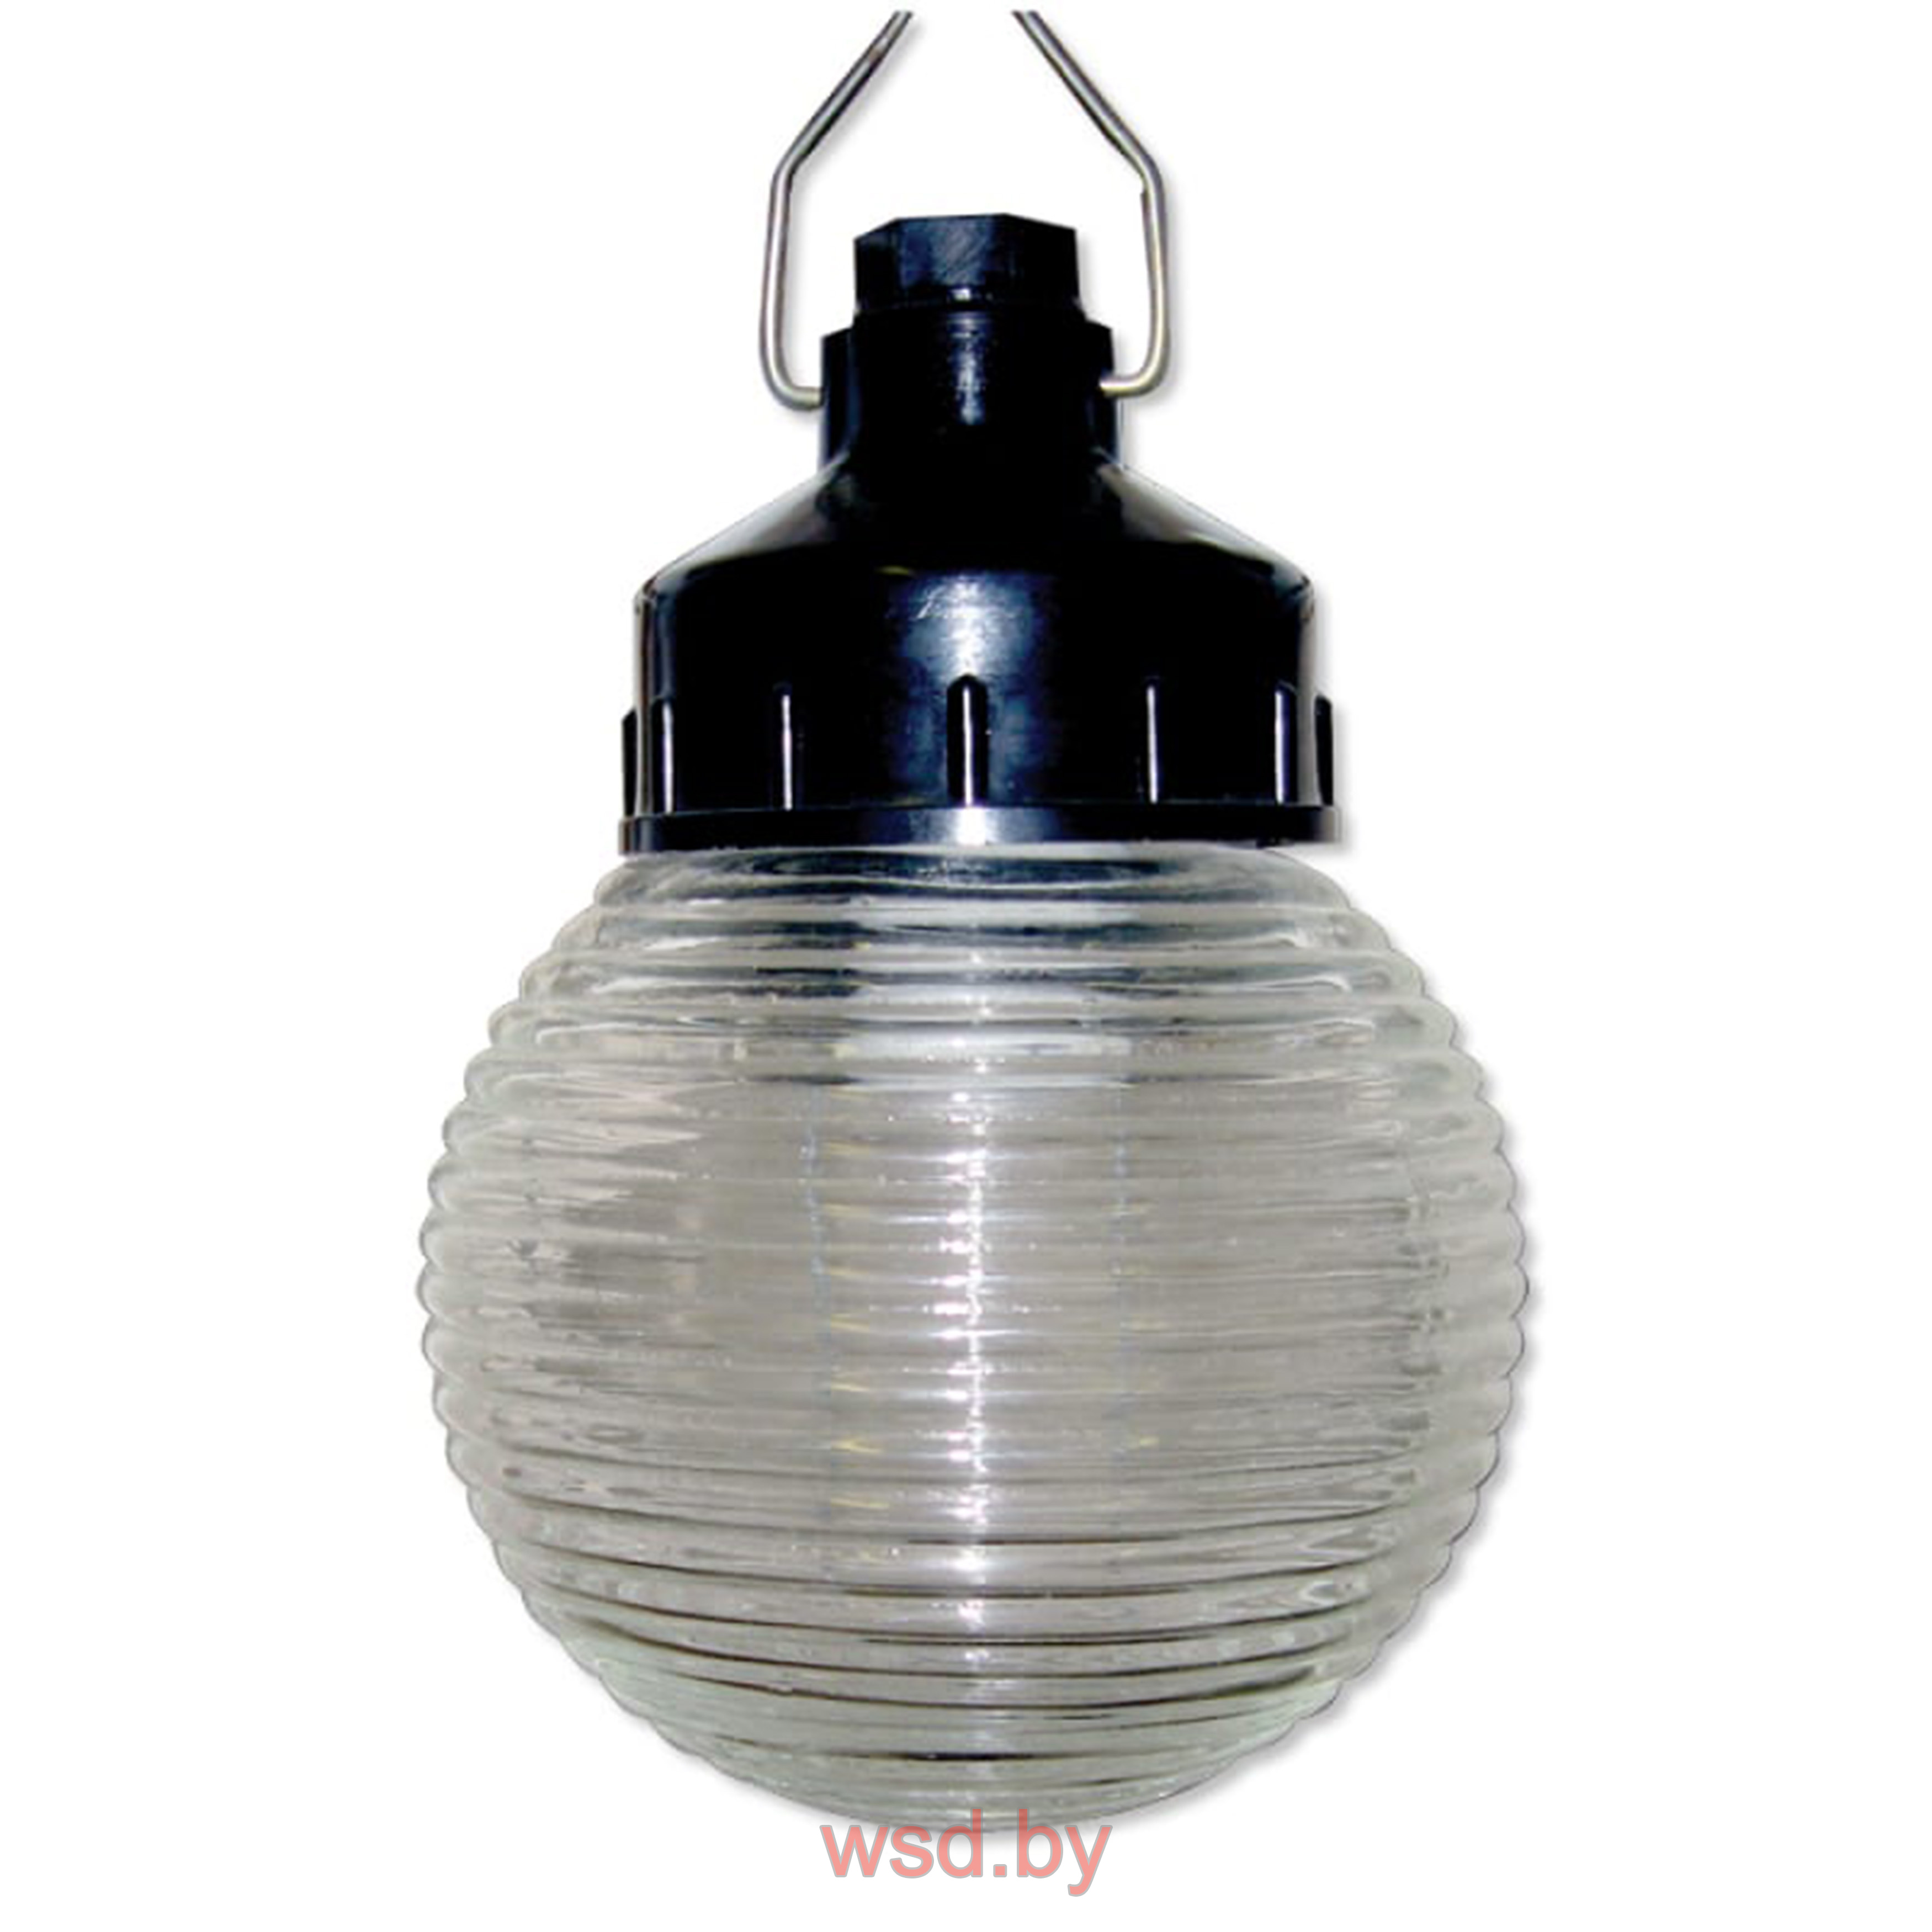 Светильник НСП 01-60-003 подвесной Гранат стекло IP44 E27 max 60Вт D150 шар (без лампы)